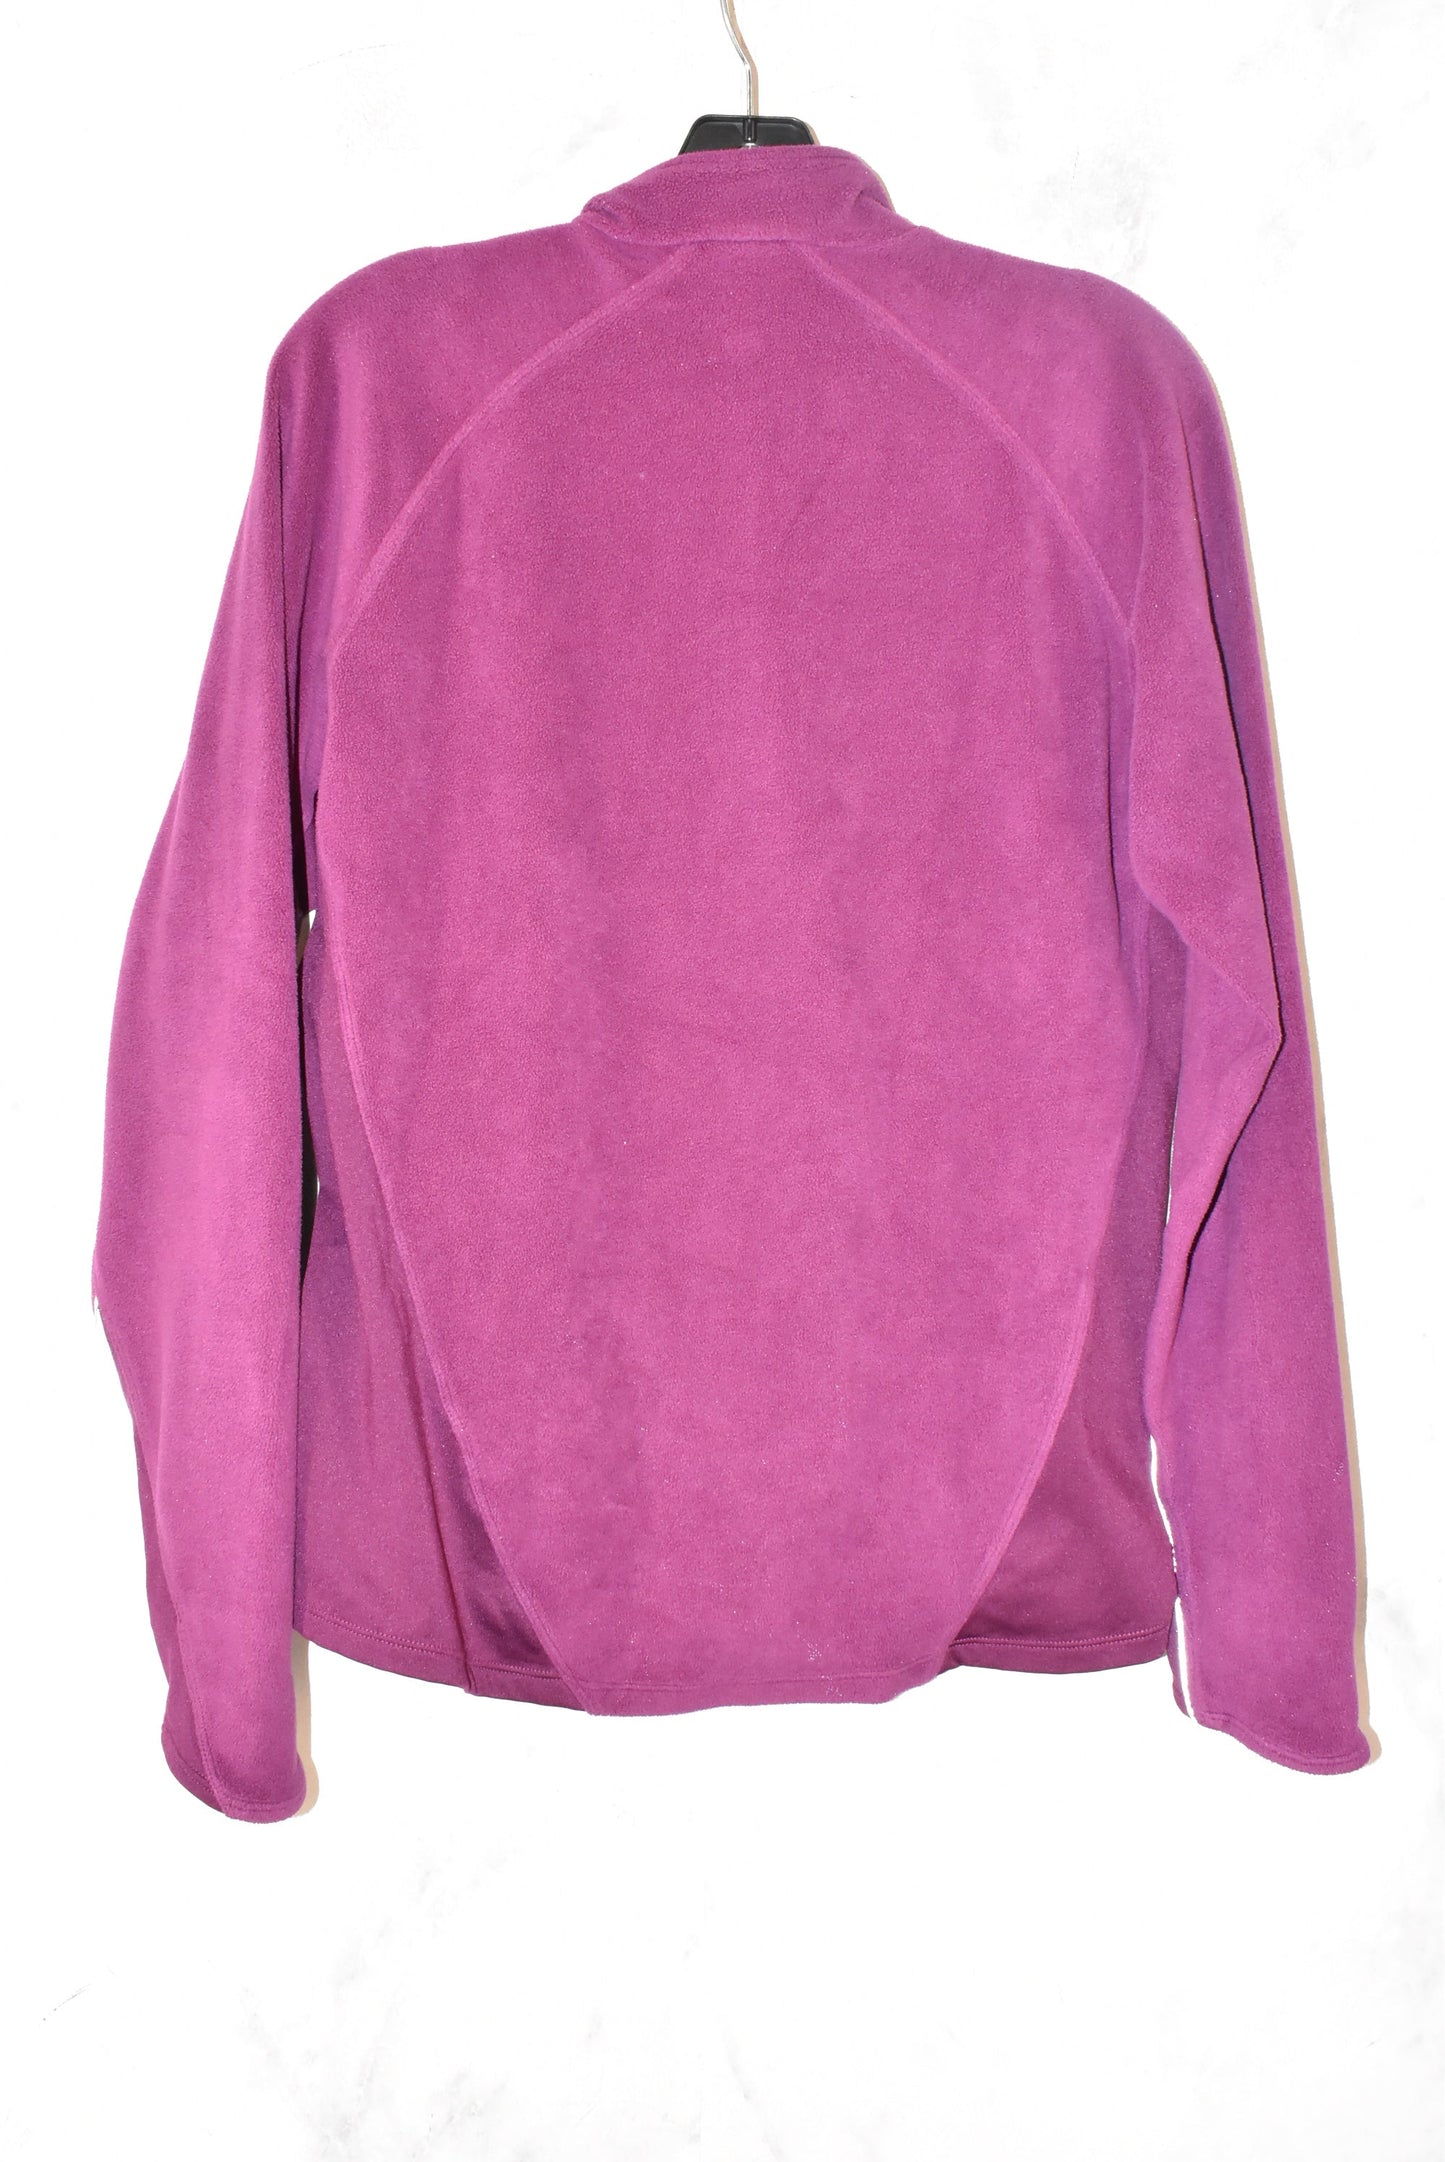 Jacket Fleece By Nike Apparel  Size: L